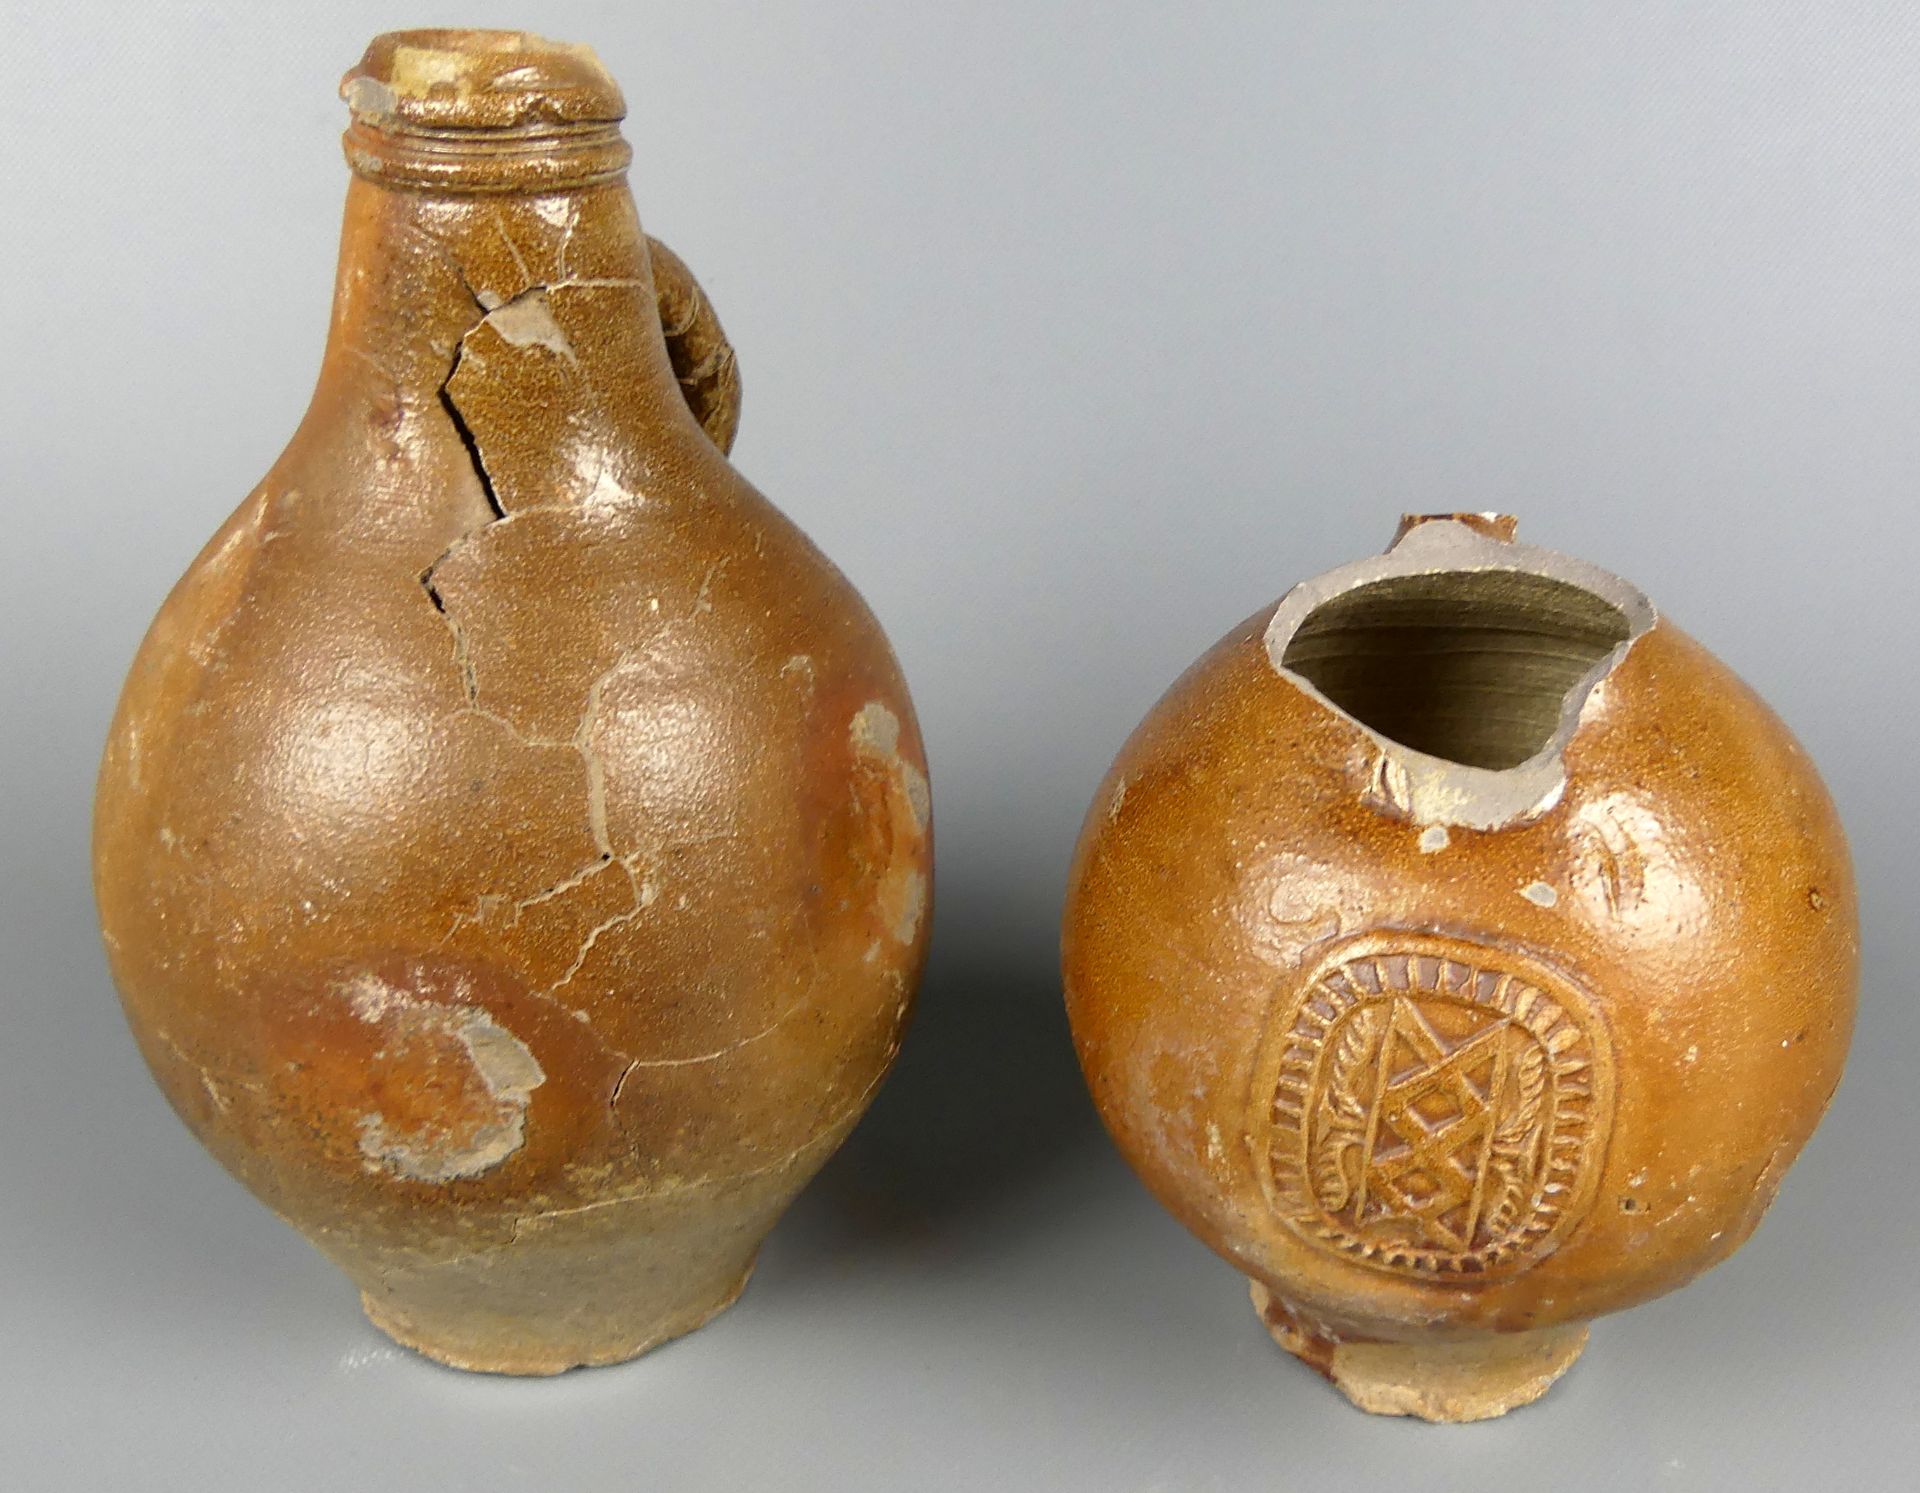 2 Krüge, 2 Flaschen, Keramik, mit Beschädigungen, Rest. Objekte